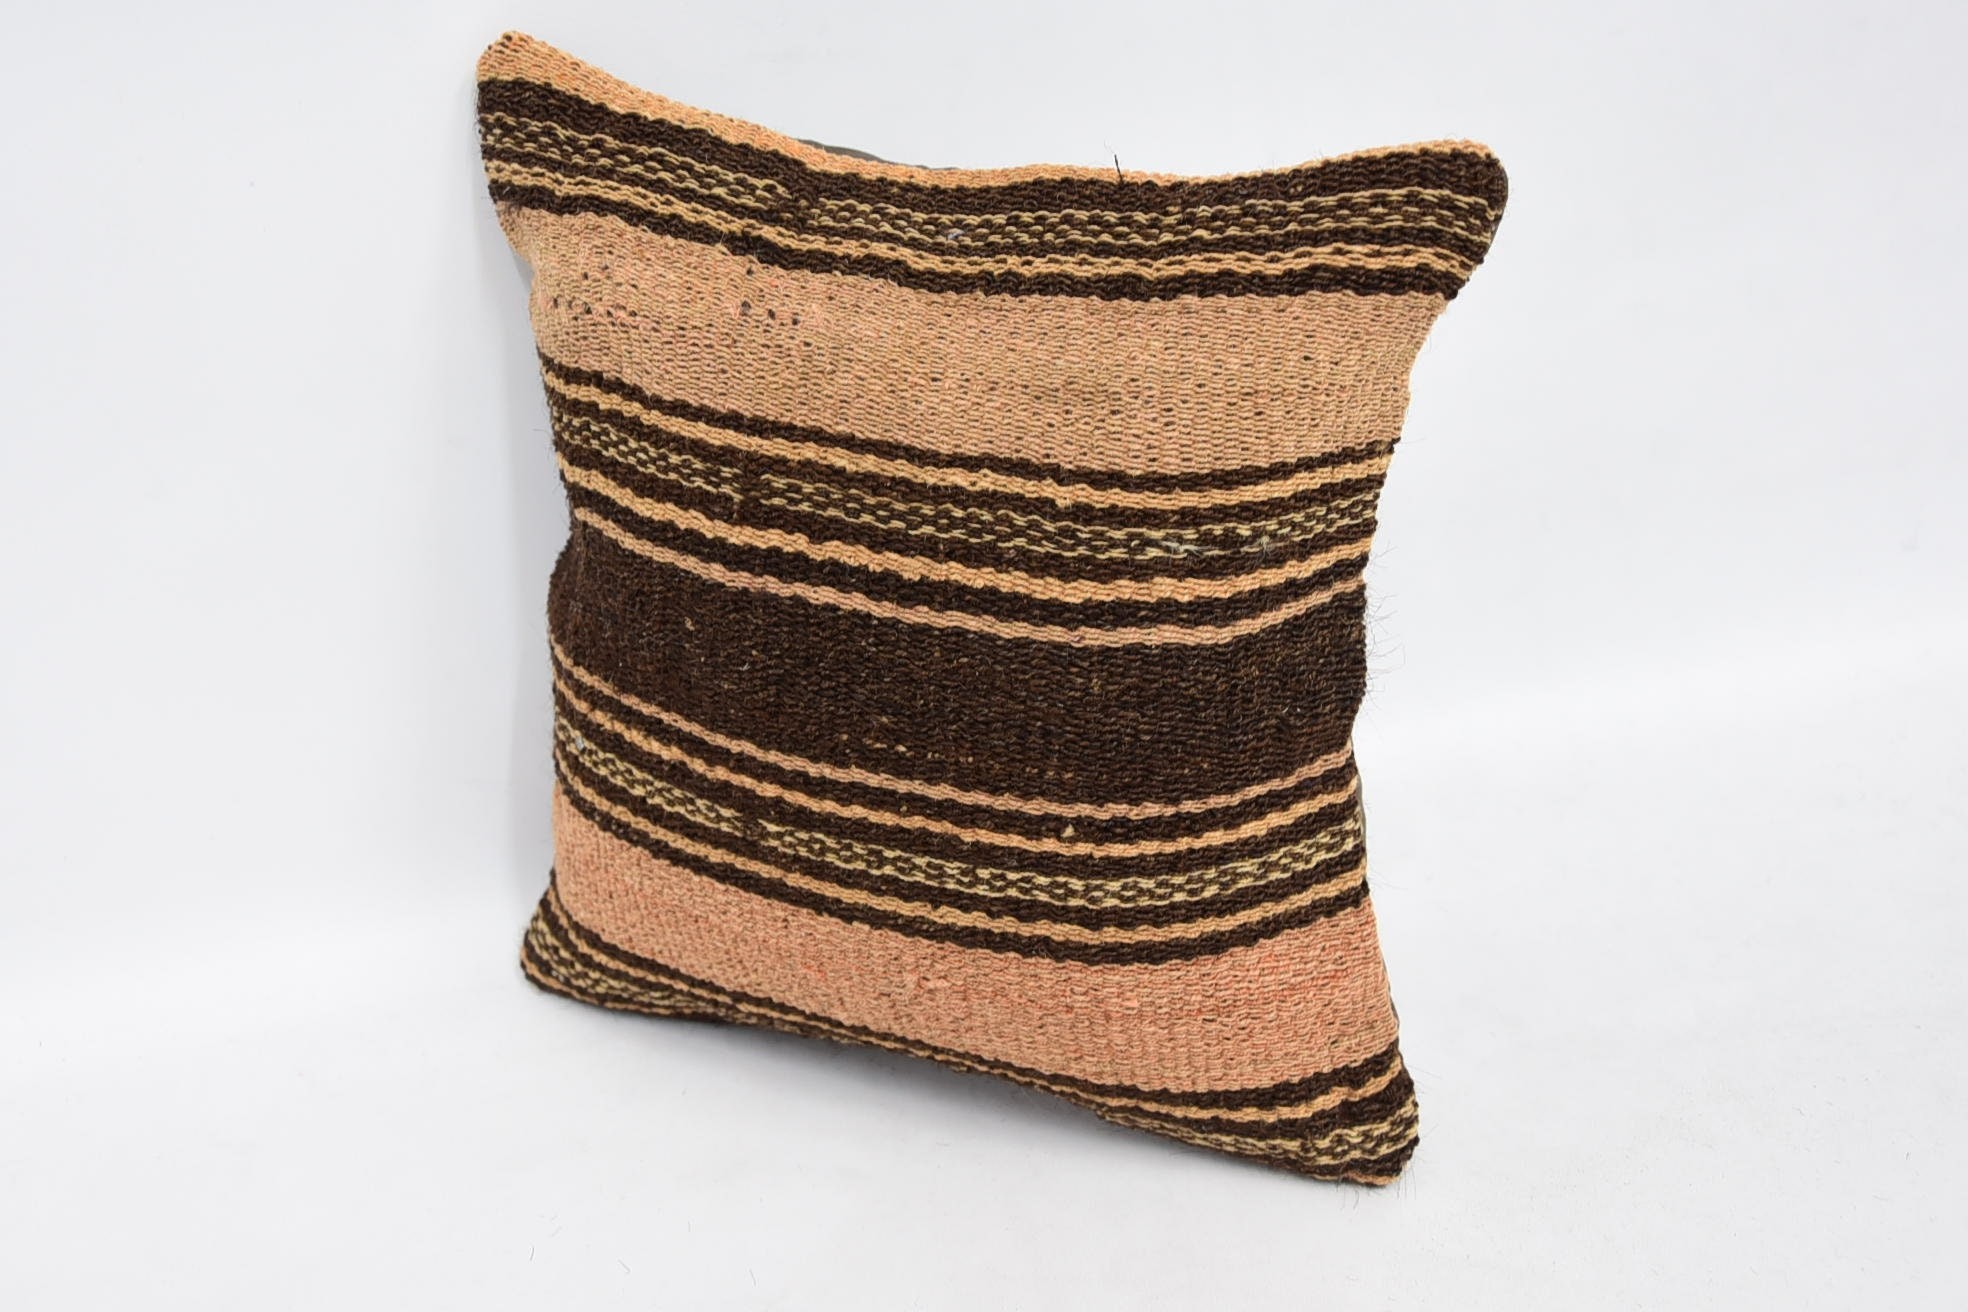 Neutral Throw Cushion Cover, Kilim Pillow, 12"x12" Brown Cushion Cover, Throw Kilim Pillow, Handmade Kilim Cushion